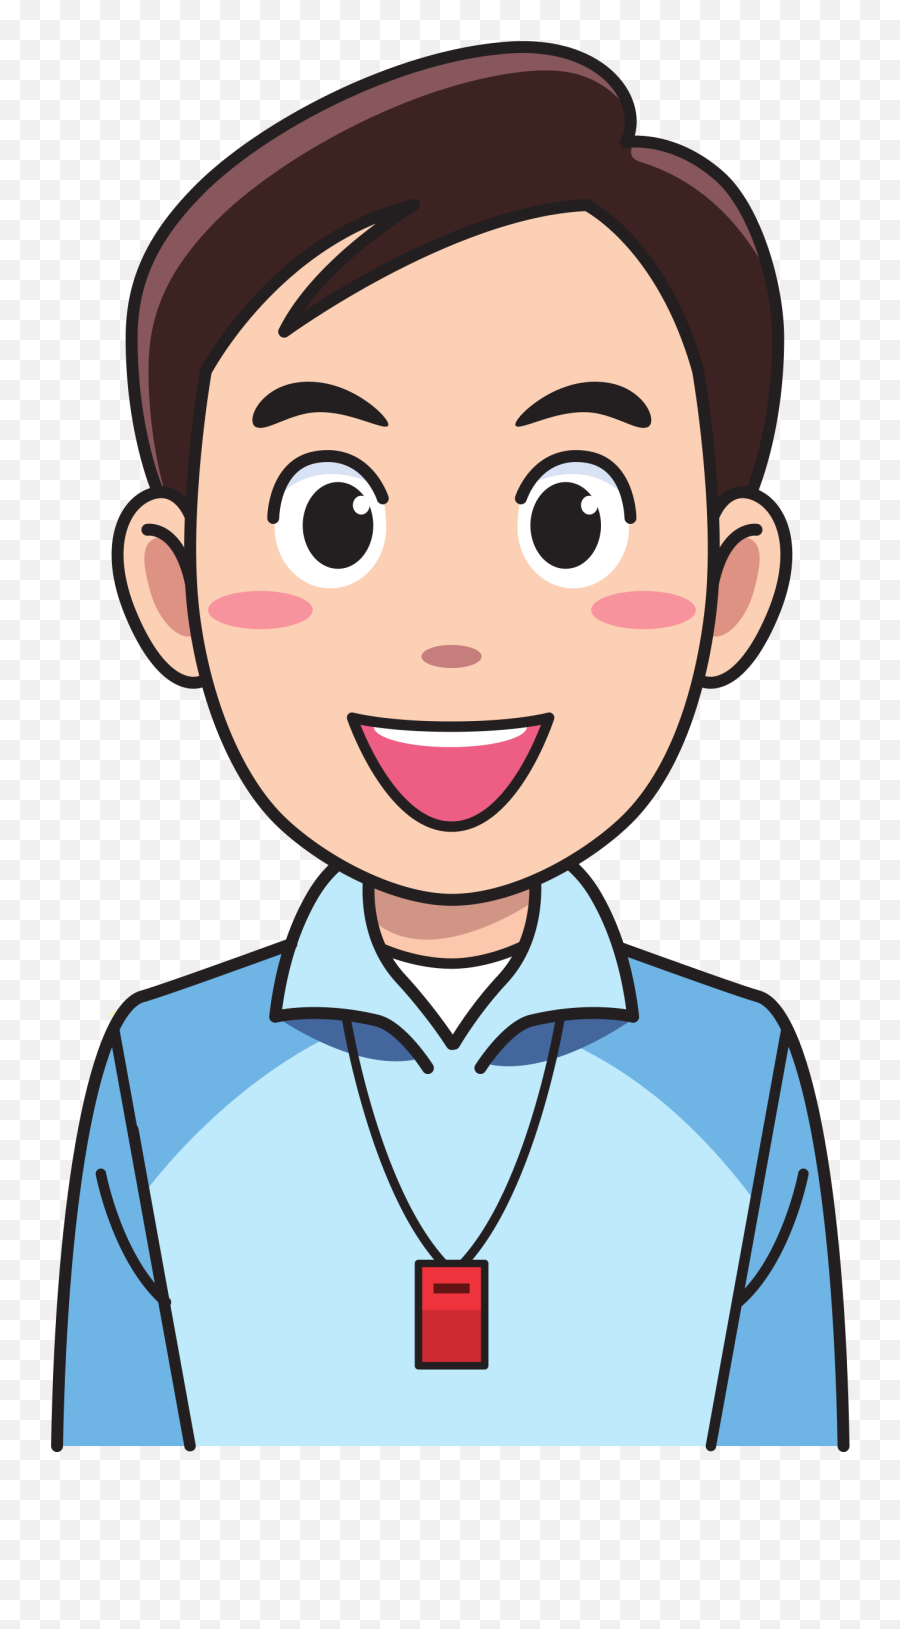 Sports Clipart Teacher Sports Teacher Transparent Free For - Pe Teacher Clipart Emoji,Teacher Clipart